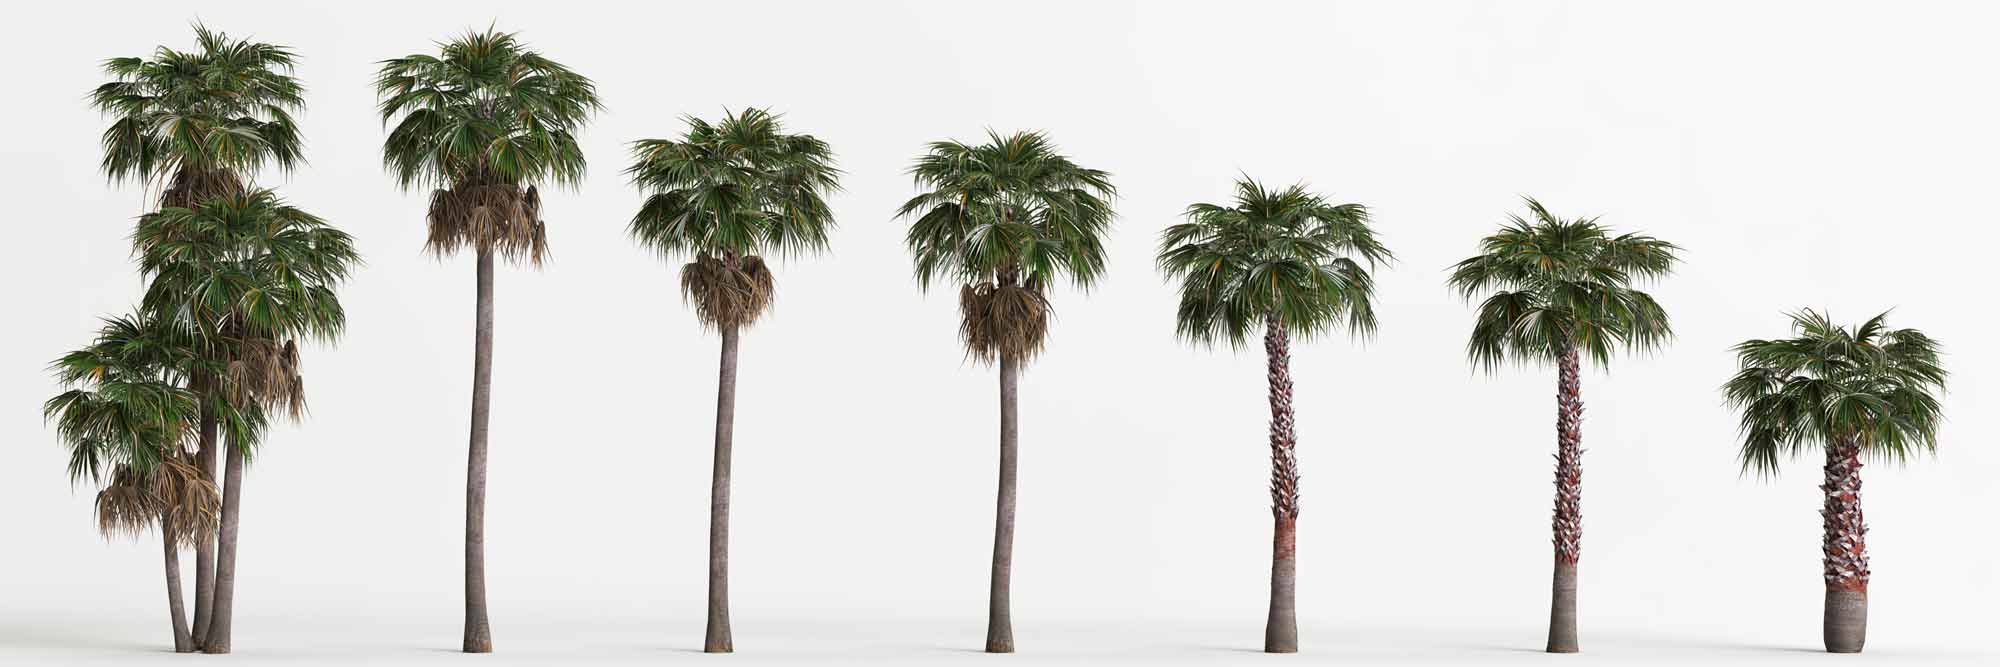 How long does a Washingtonia palm take to grow